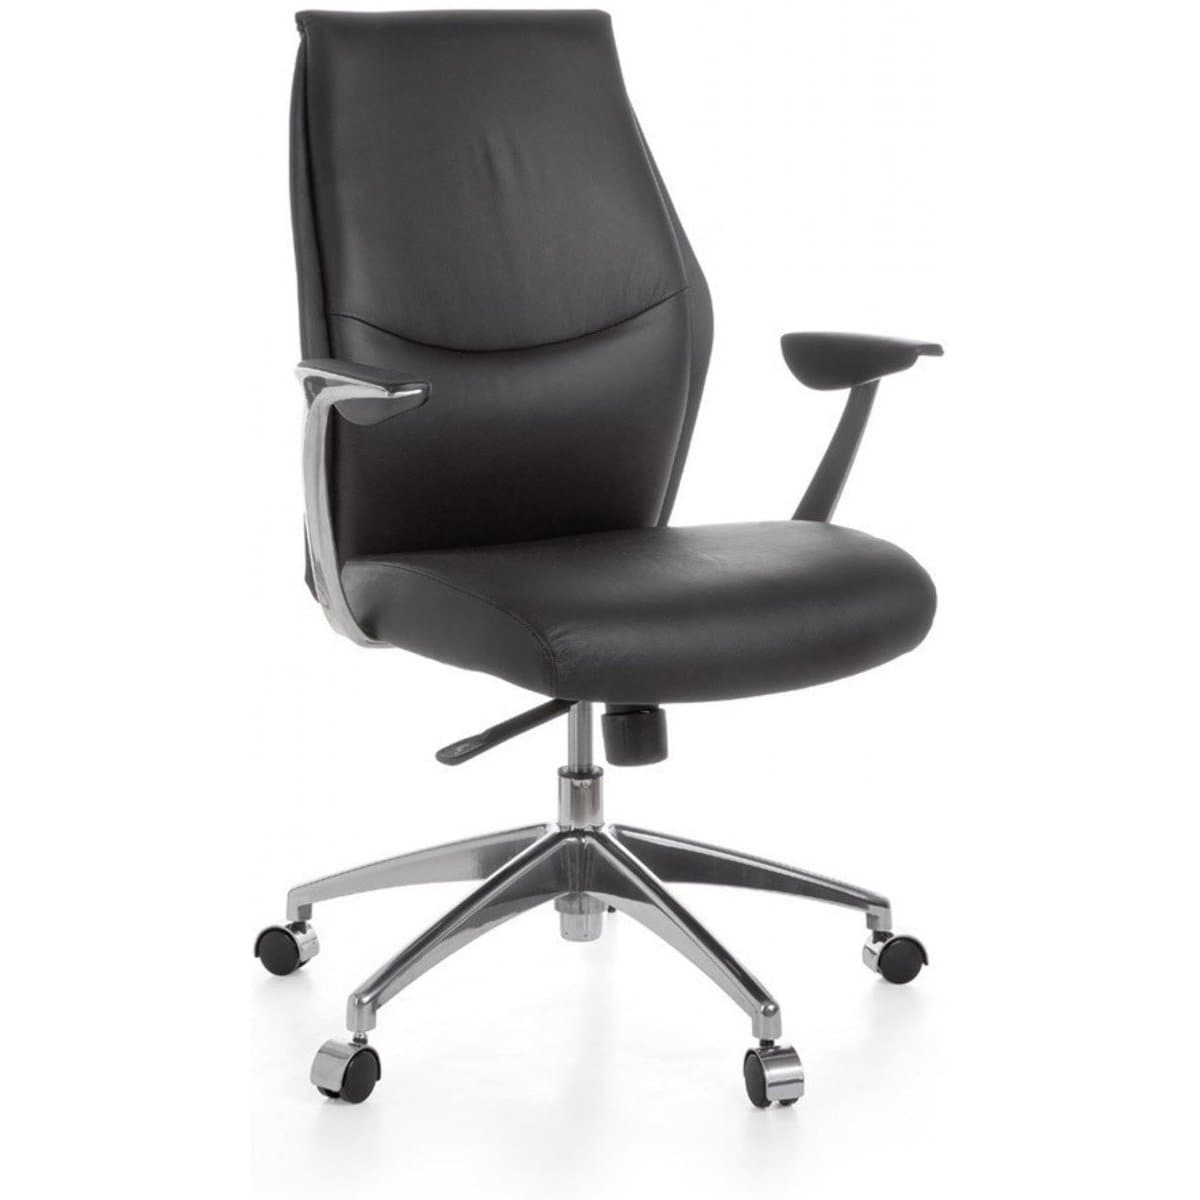 Chaise de bureau Nancy's Concourse - Chaise de bureau ergonomique - Chaise de direction en cuir noir - Chaises de bureau pour adultes